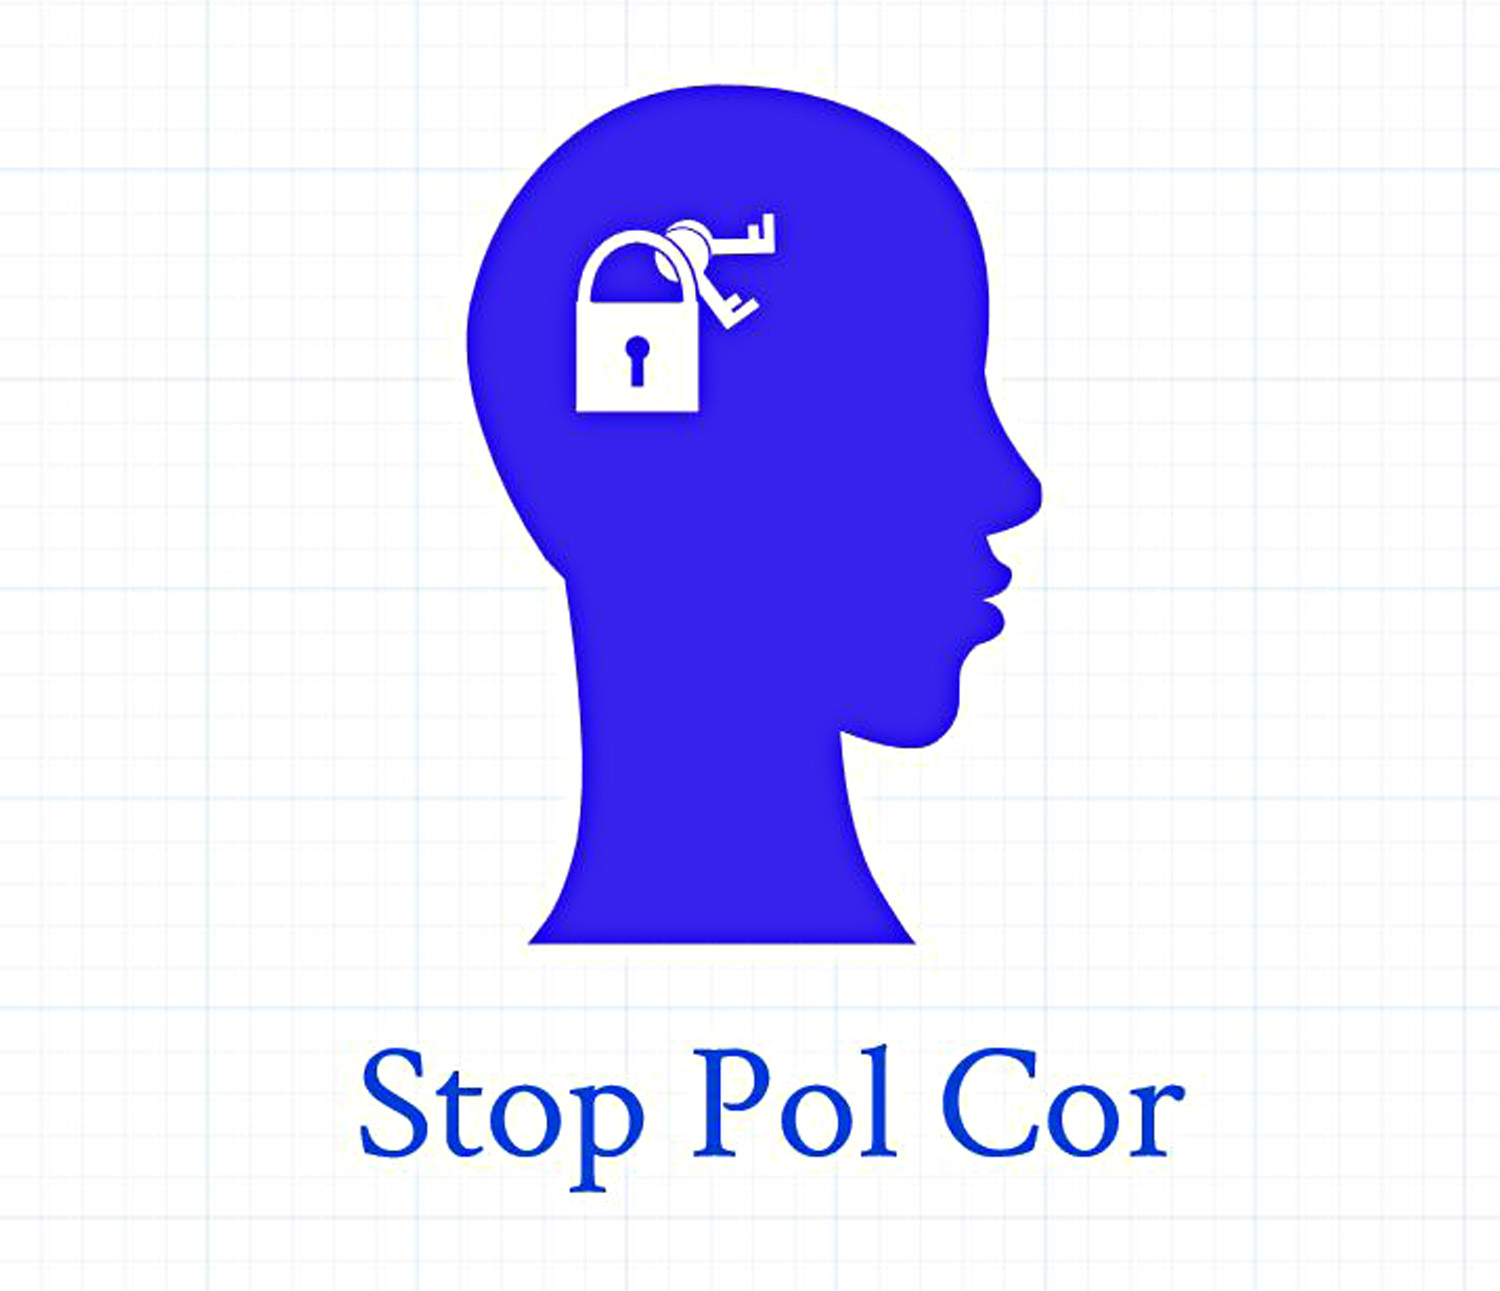 StopPolCor